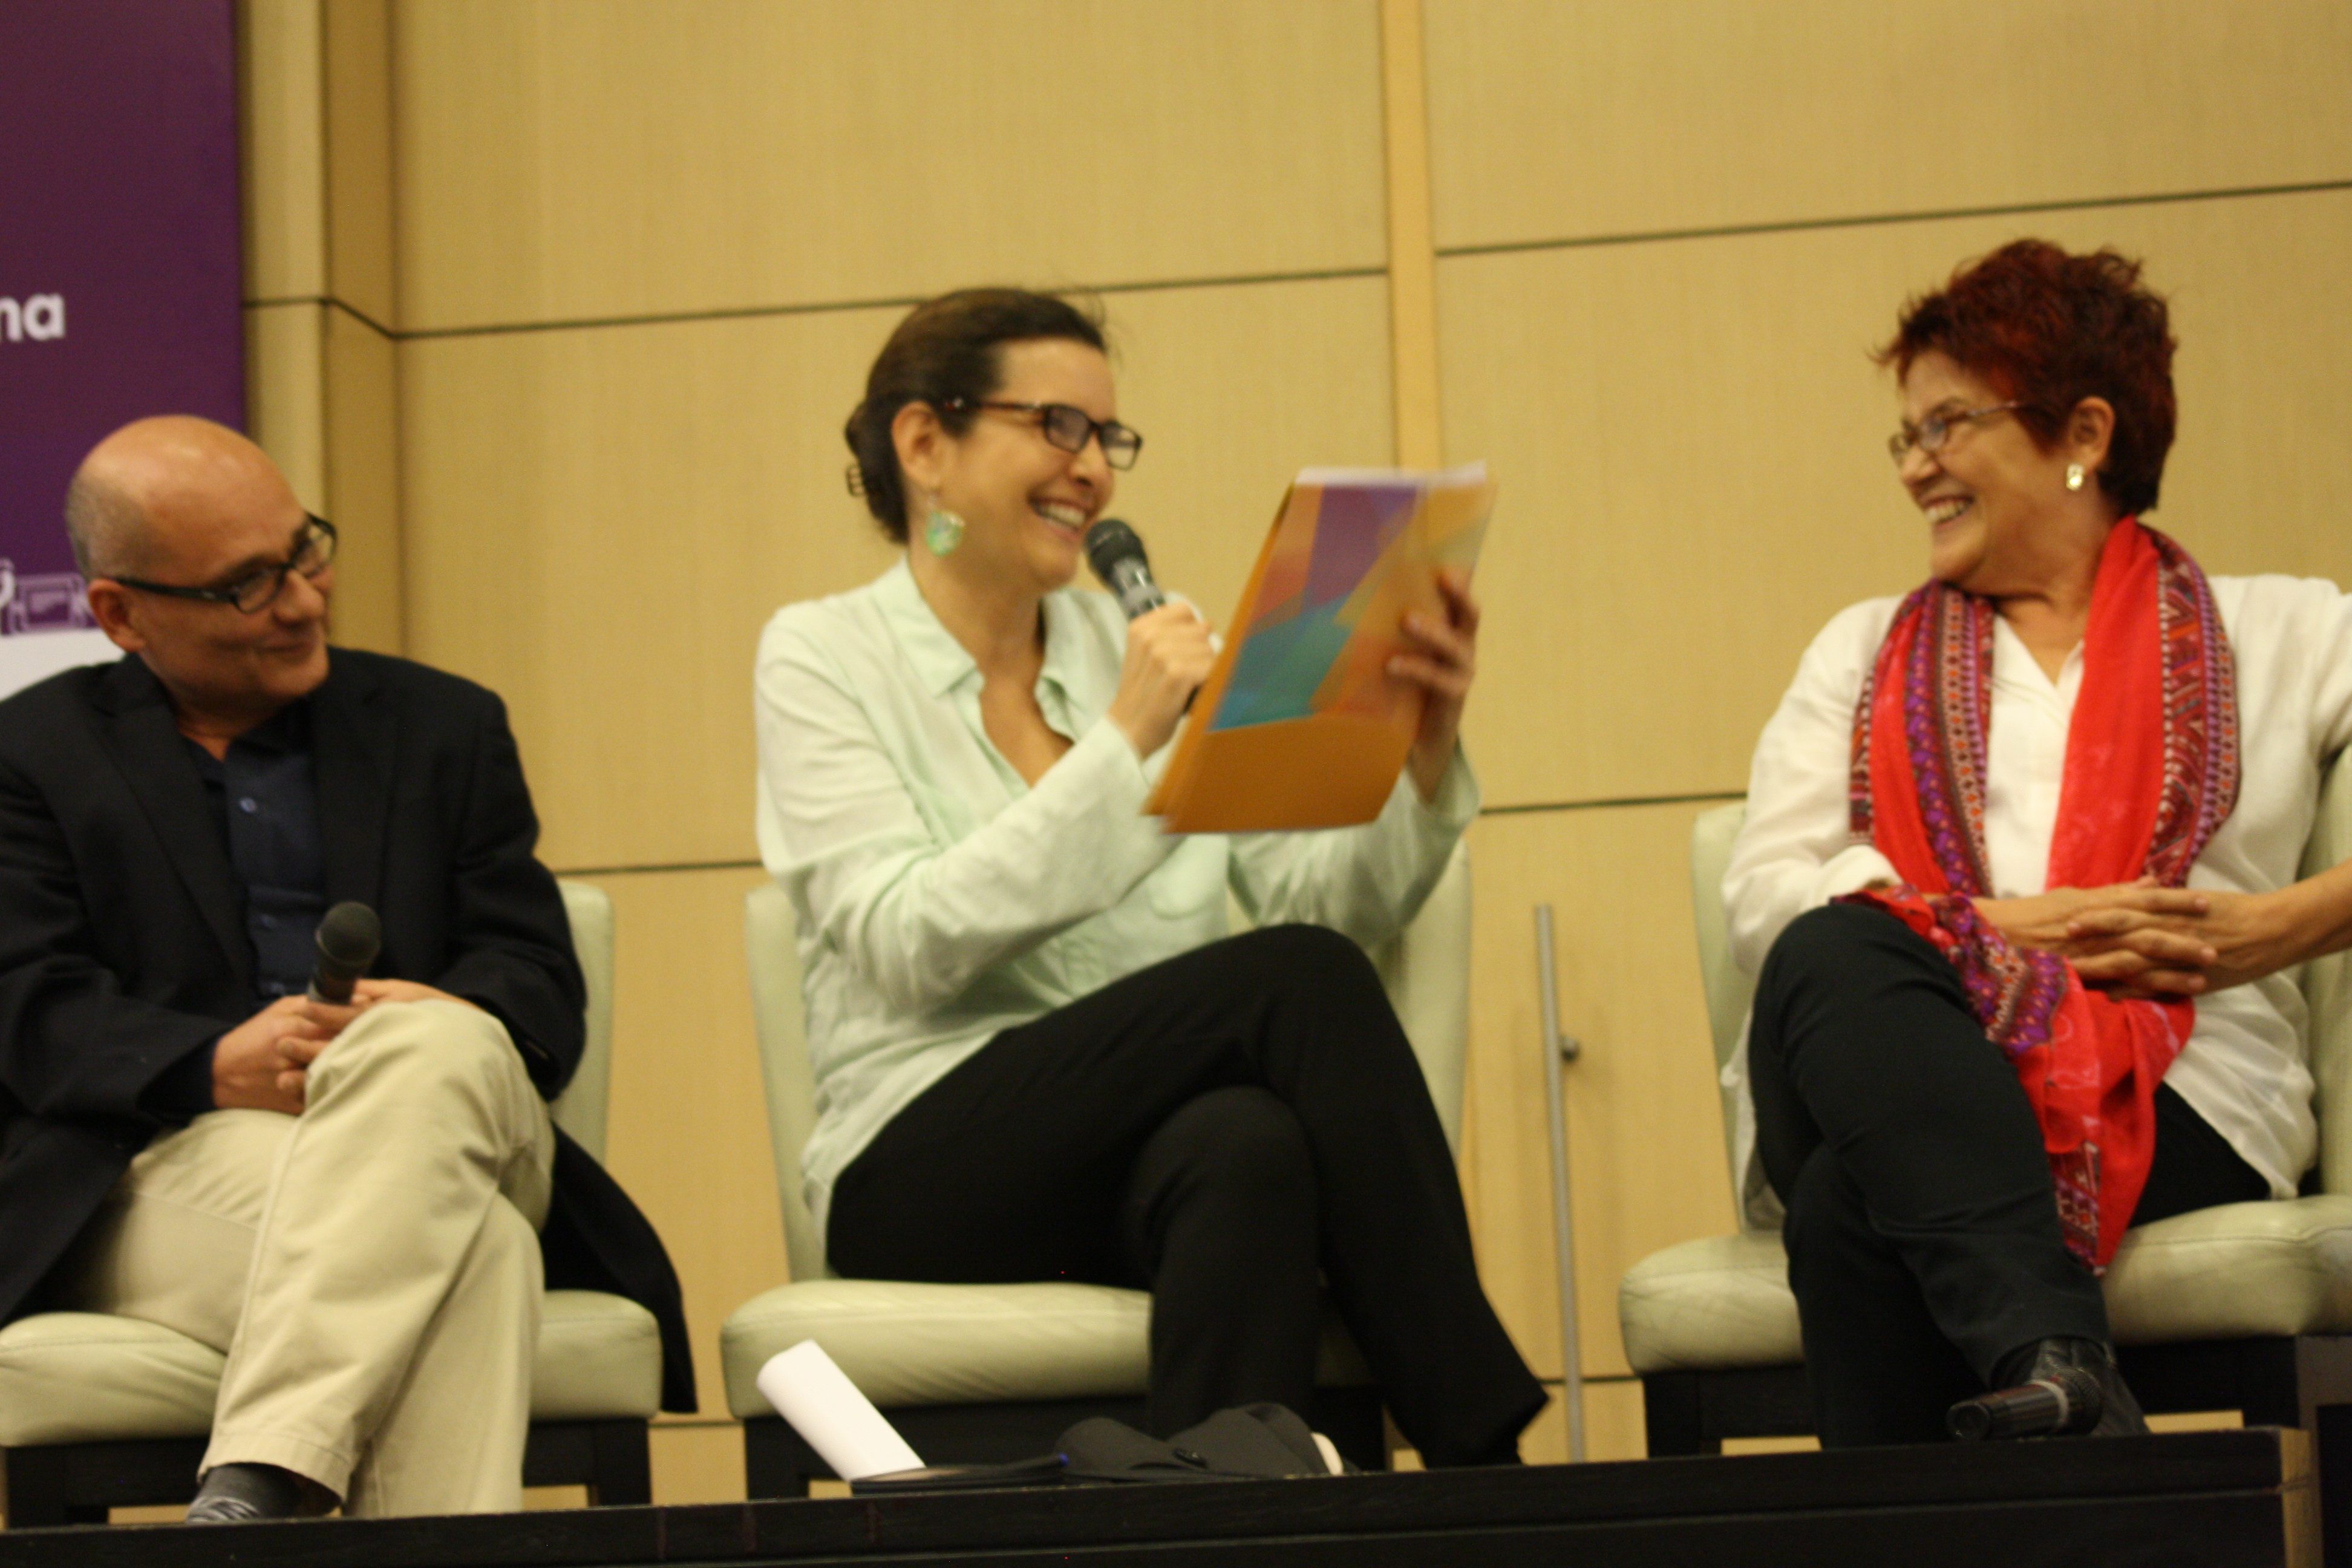 Marianne Ponsford y Pilar Lozano en Panel de expertos sobre Bibliotecas públicas y lectura: de vuelta a la palabra